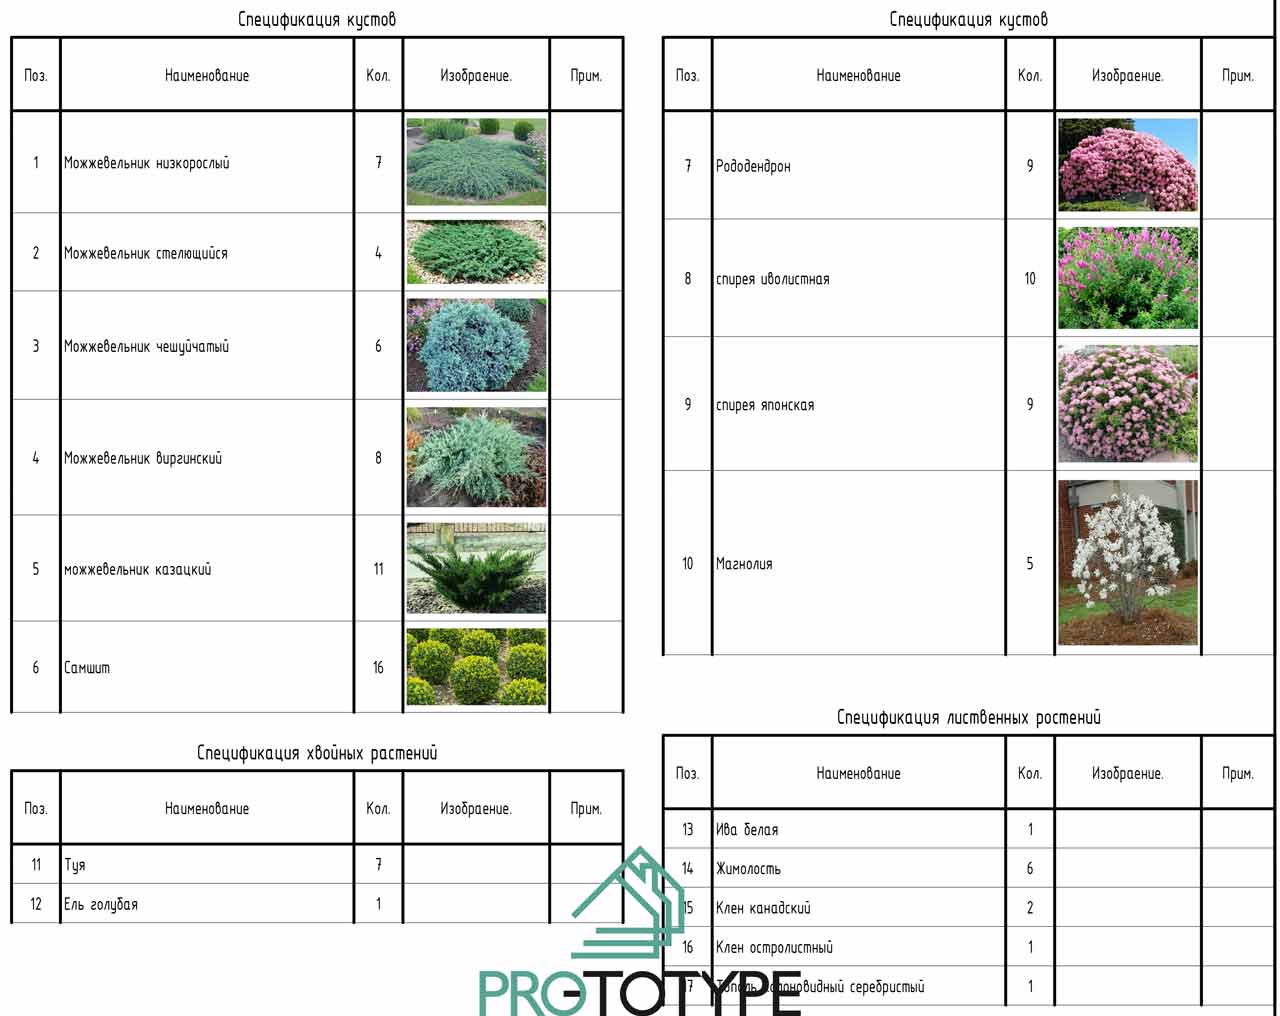 Спецификация кустов с фотографиями как выглядит растение